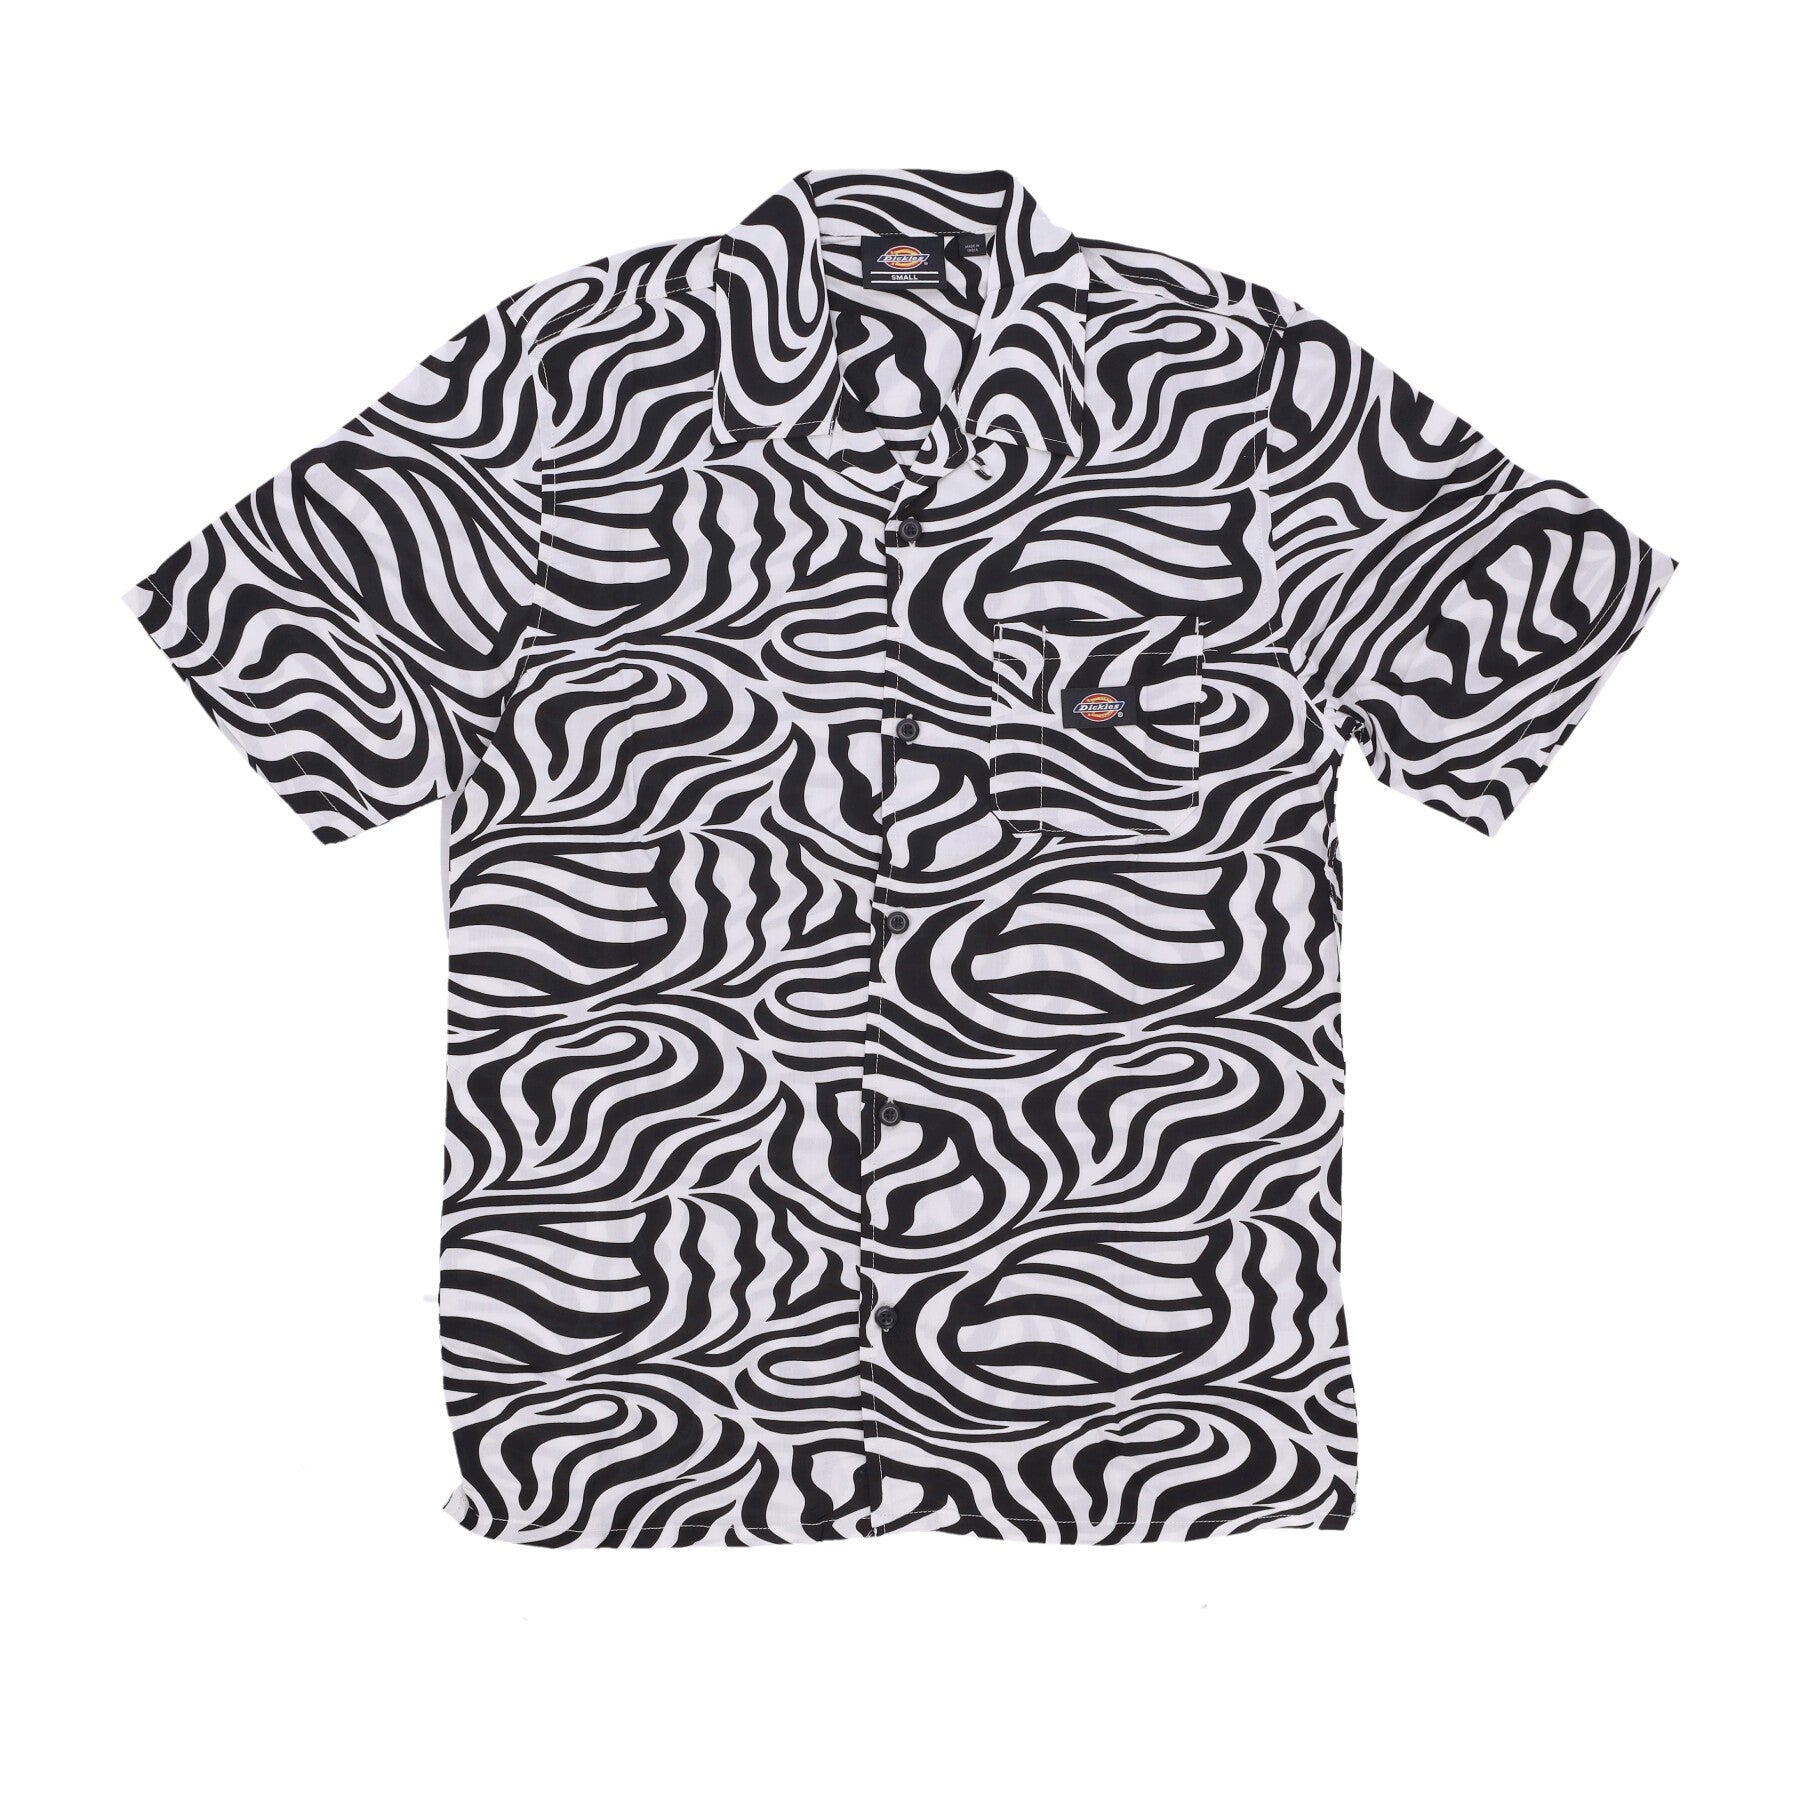 Clackamas Shirt Cloud Zebra Men's Short Sleeve Shirt